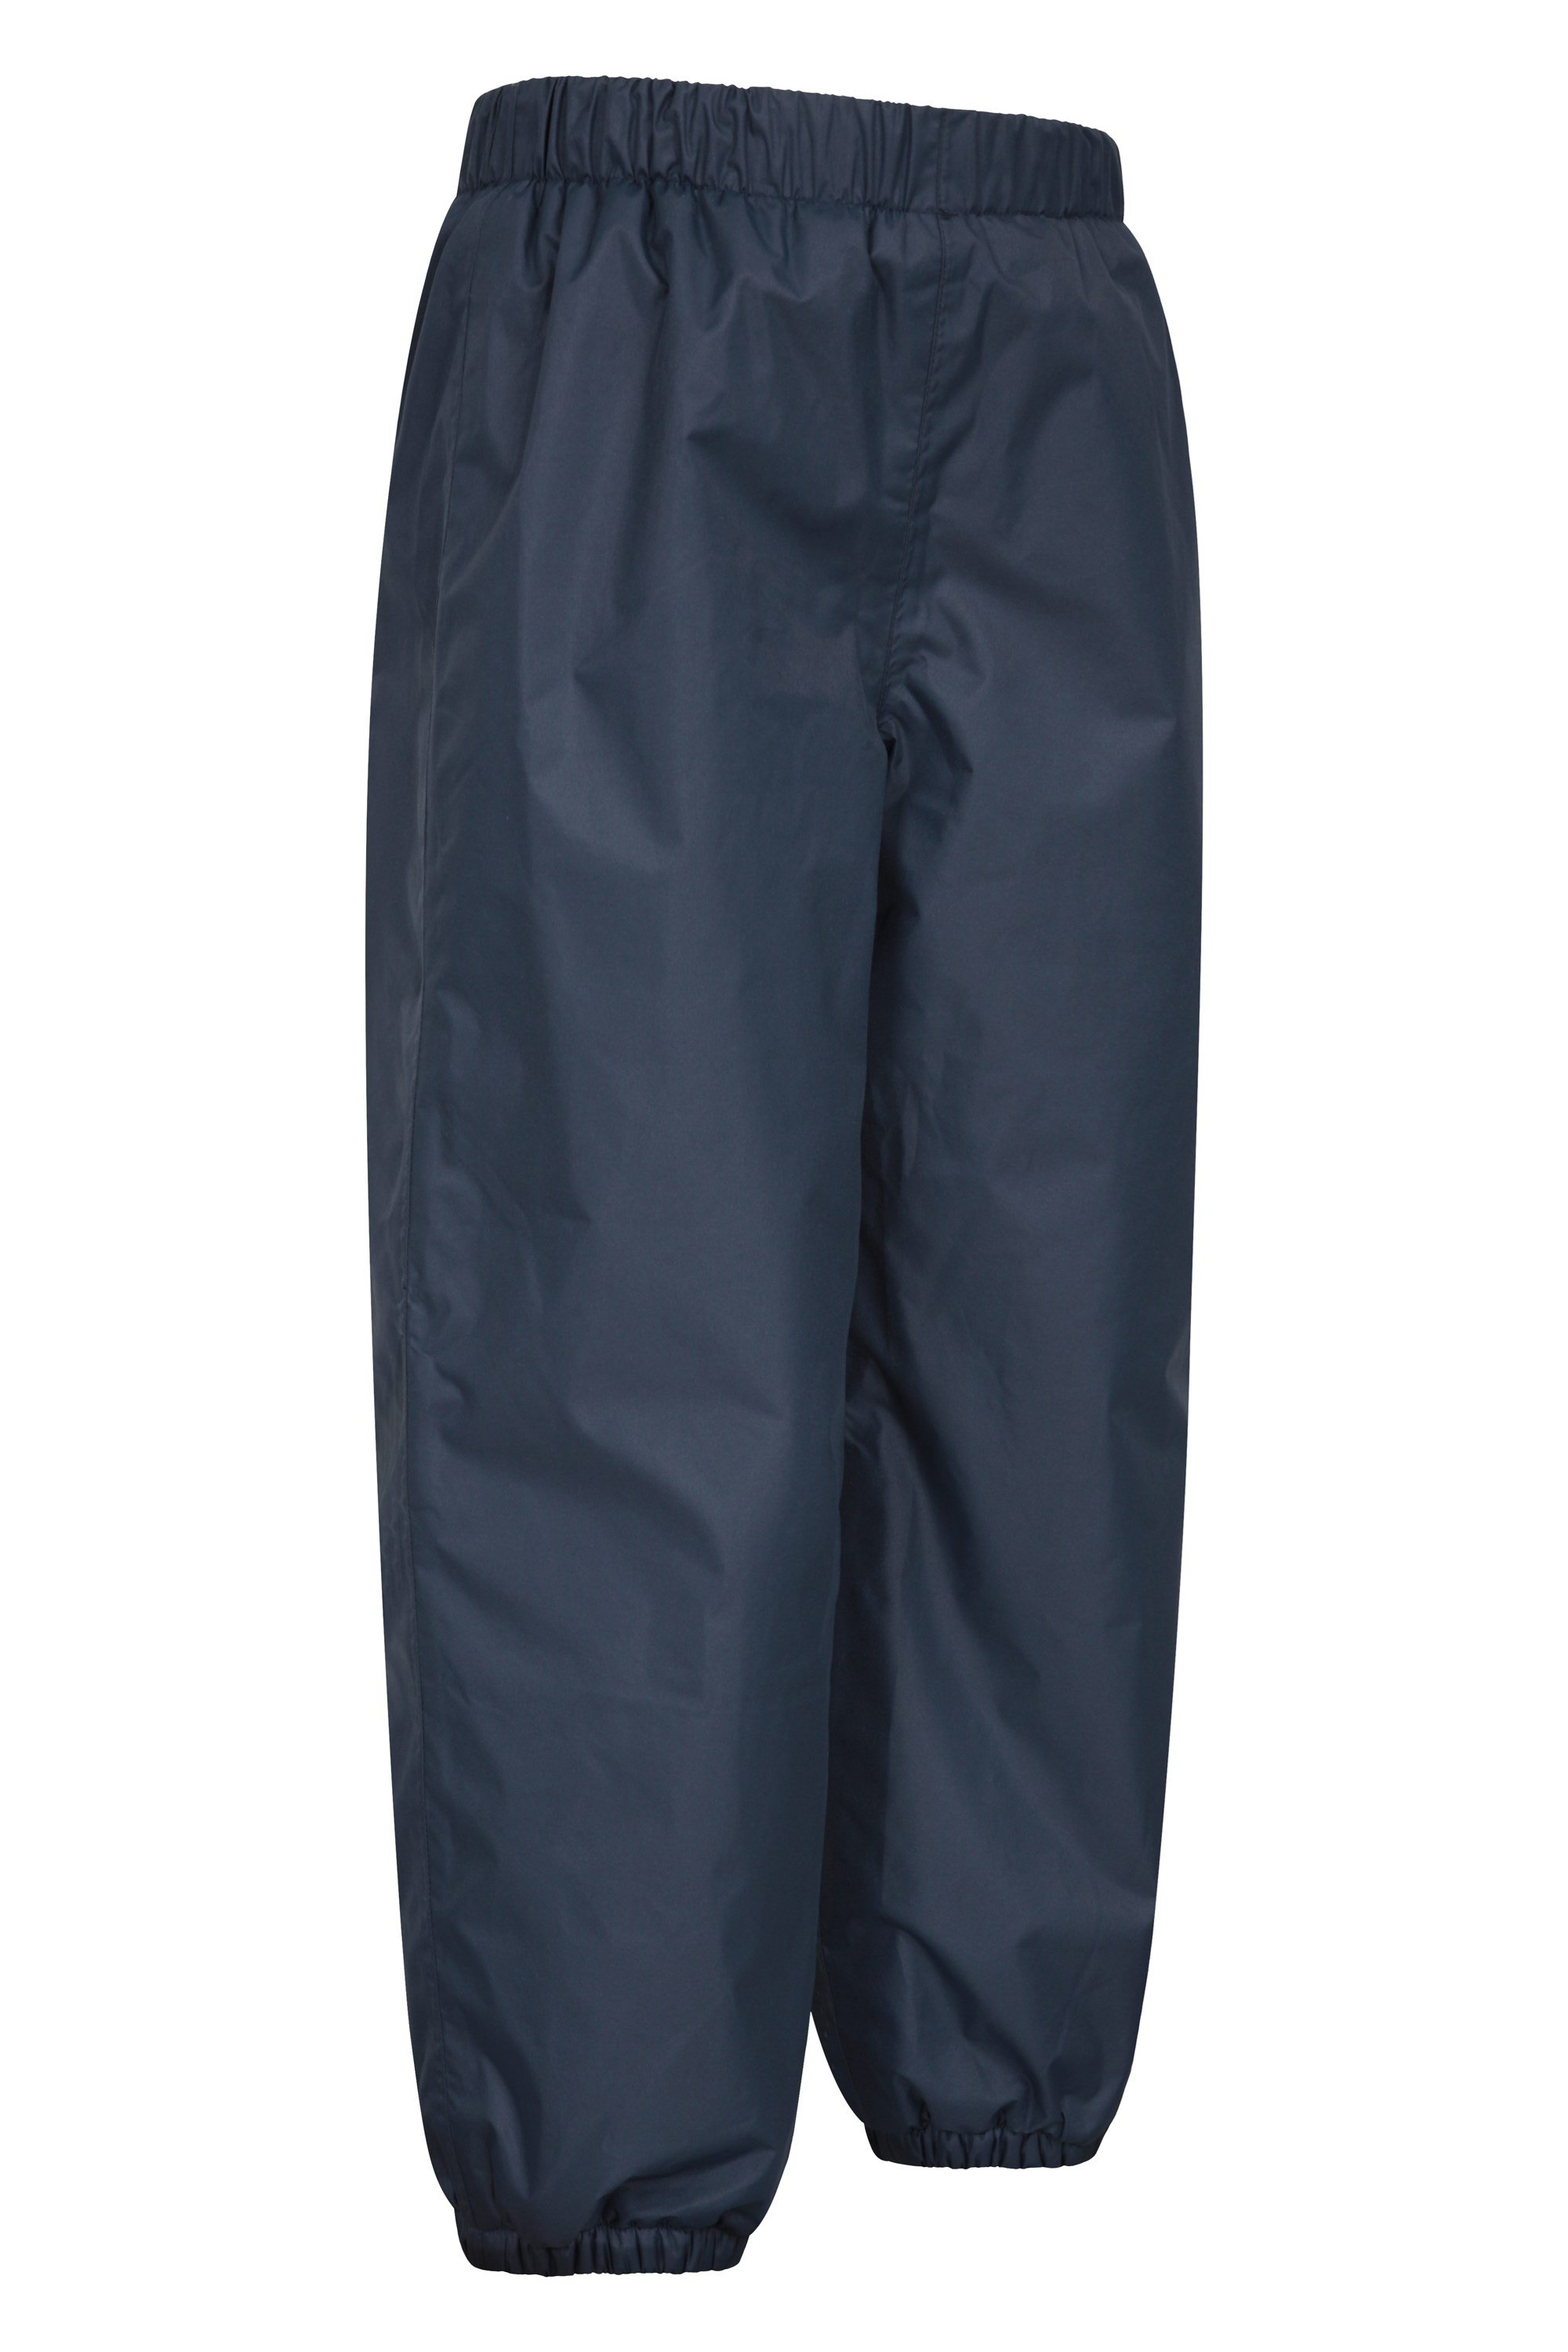 Kids Water-Proof Fleece-Lined Rain Pants Fleece-Lined Pants: Blue, 5T 